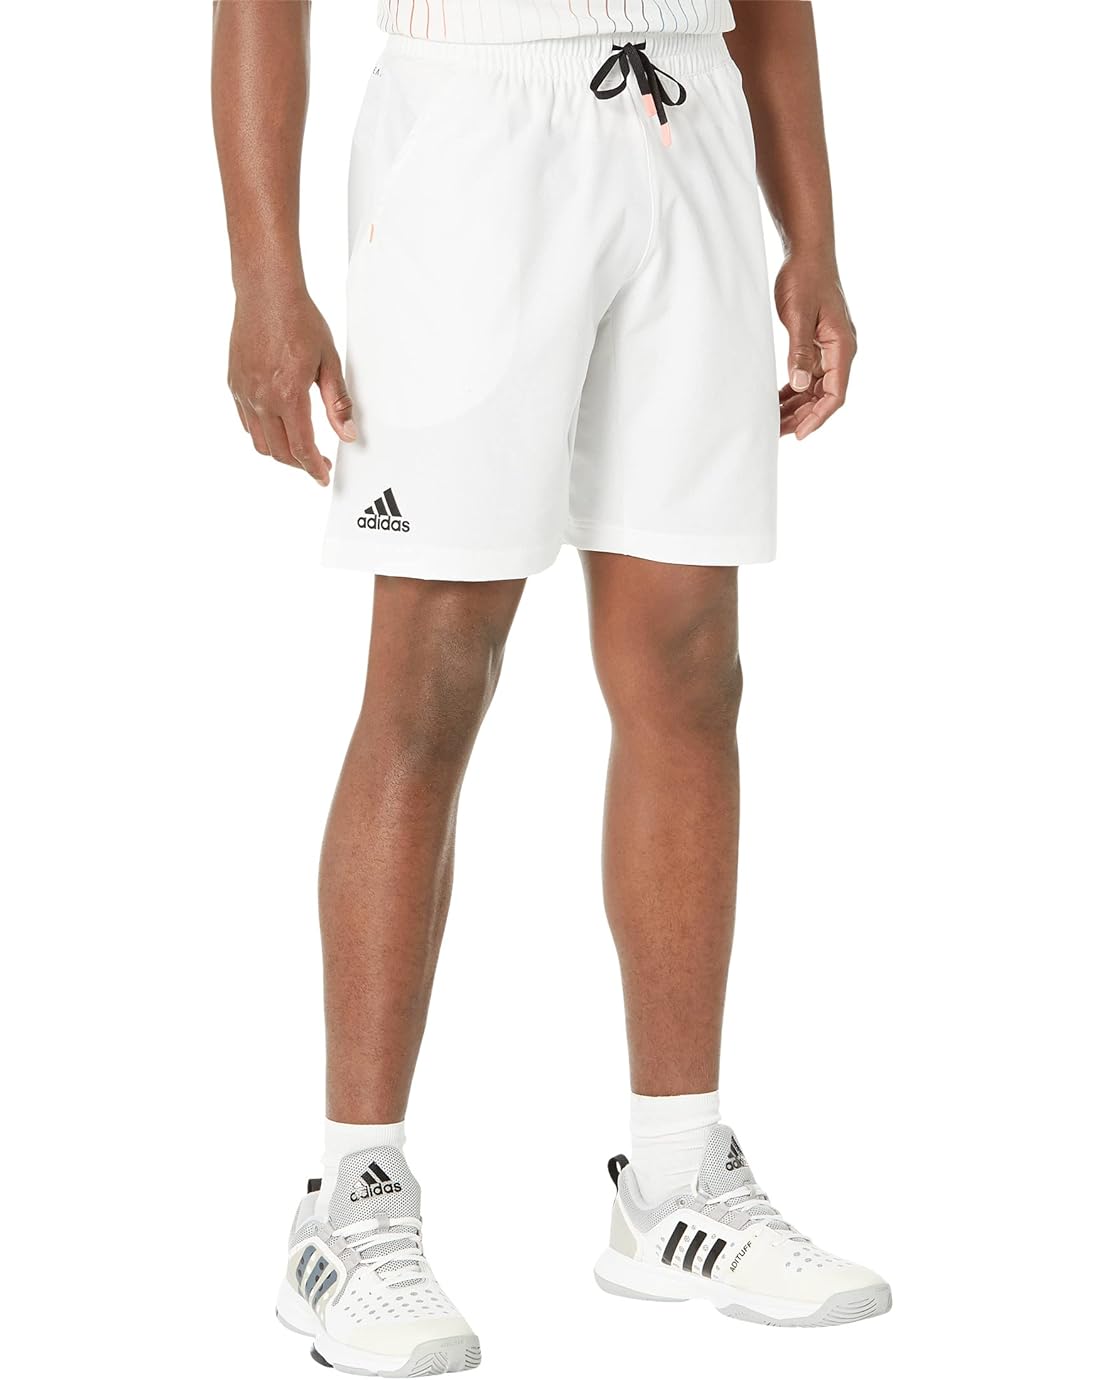 Adidas Ergo 9 Tennis Shorts